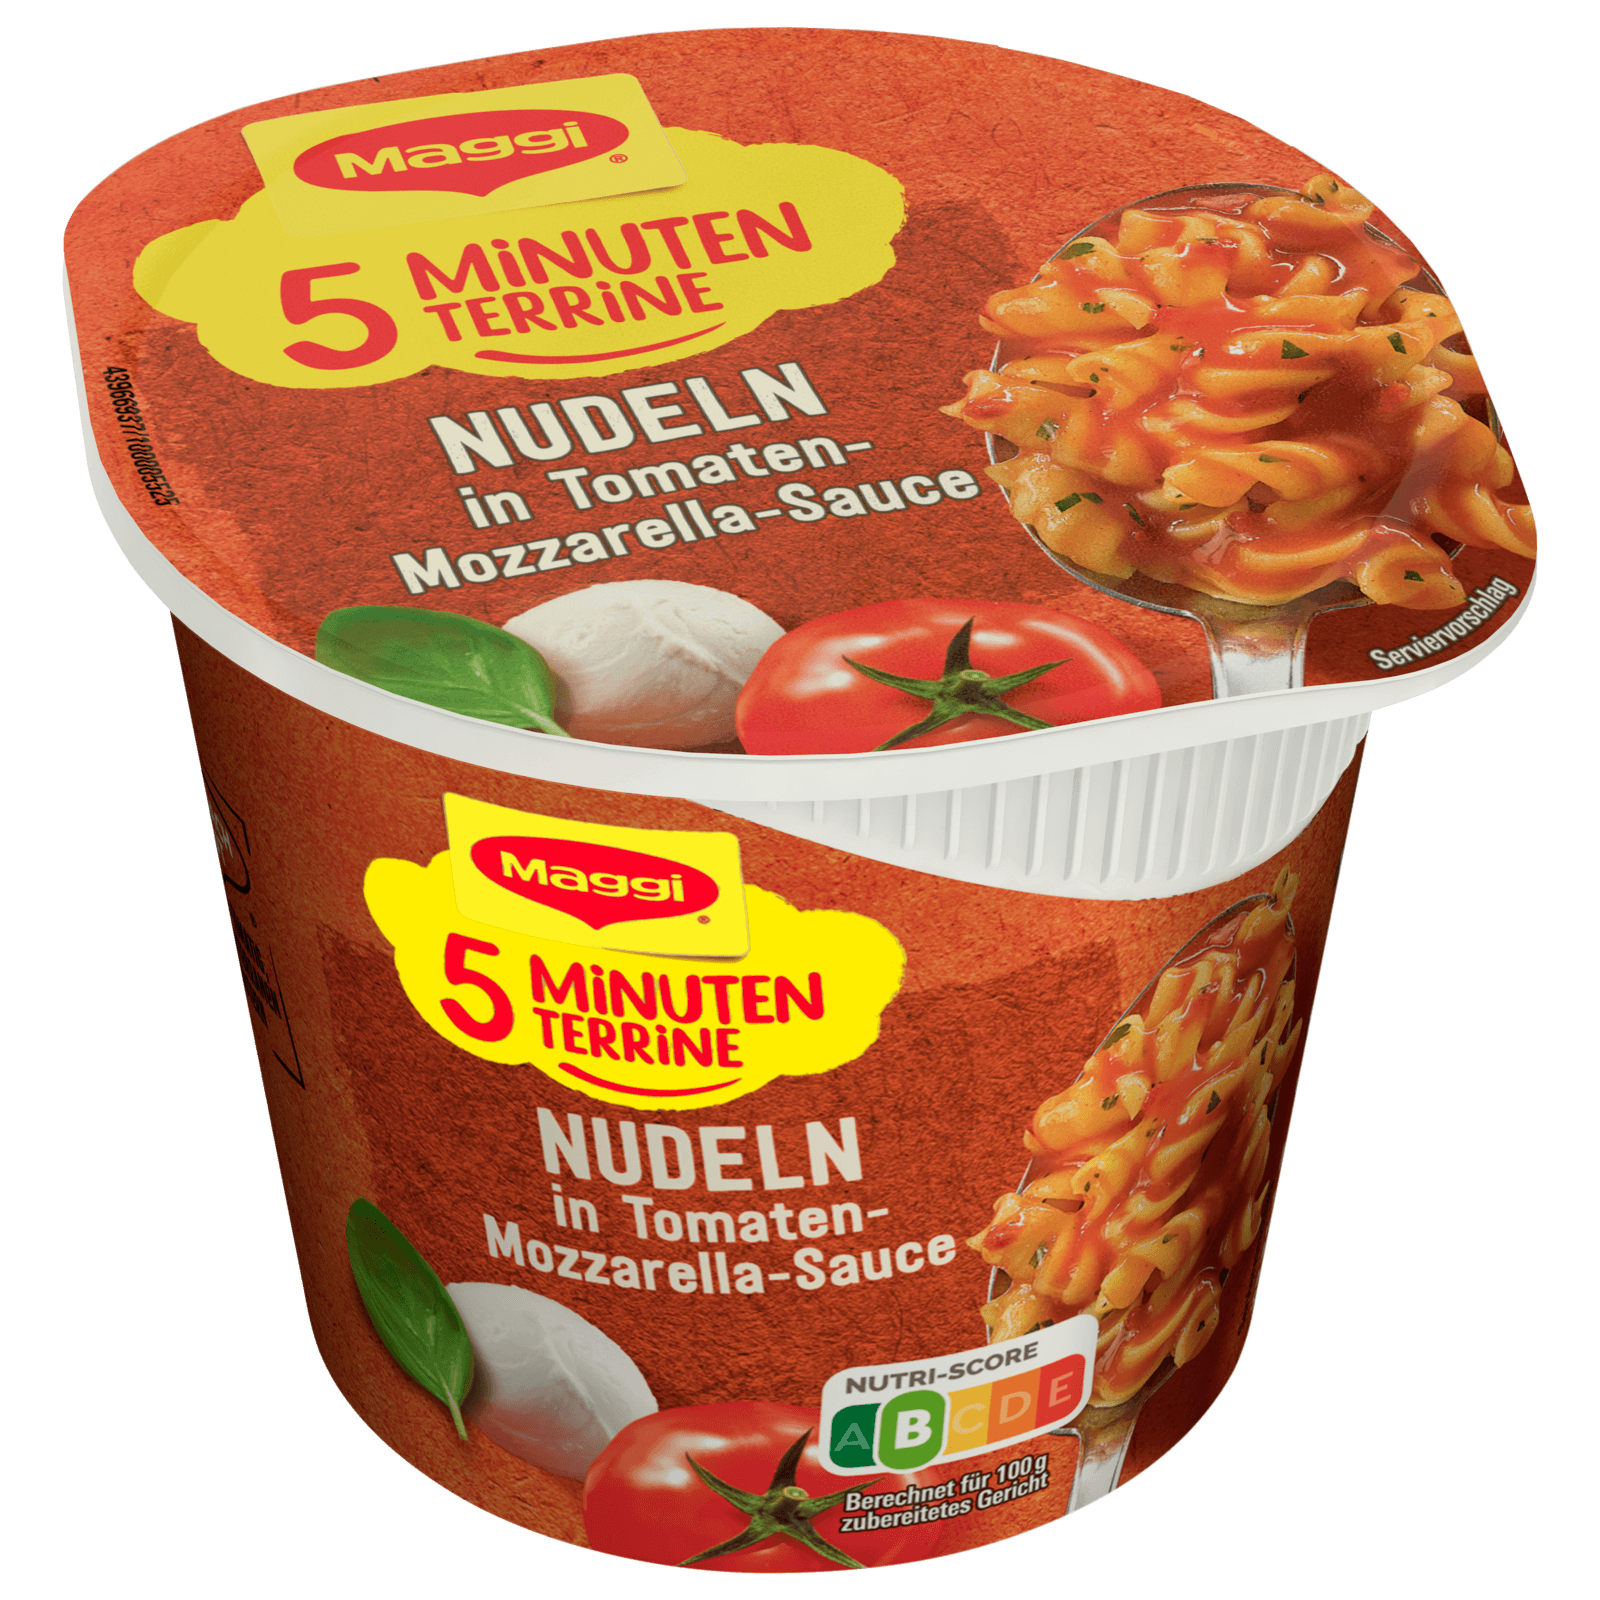 Maggi 5 Minuten Terrine Nudeln in Tomaten-Mozzarella Sauce 55g